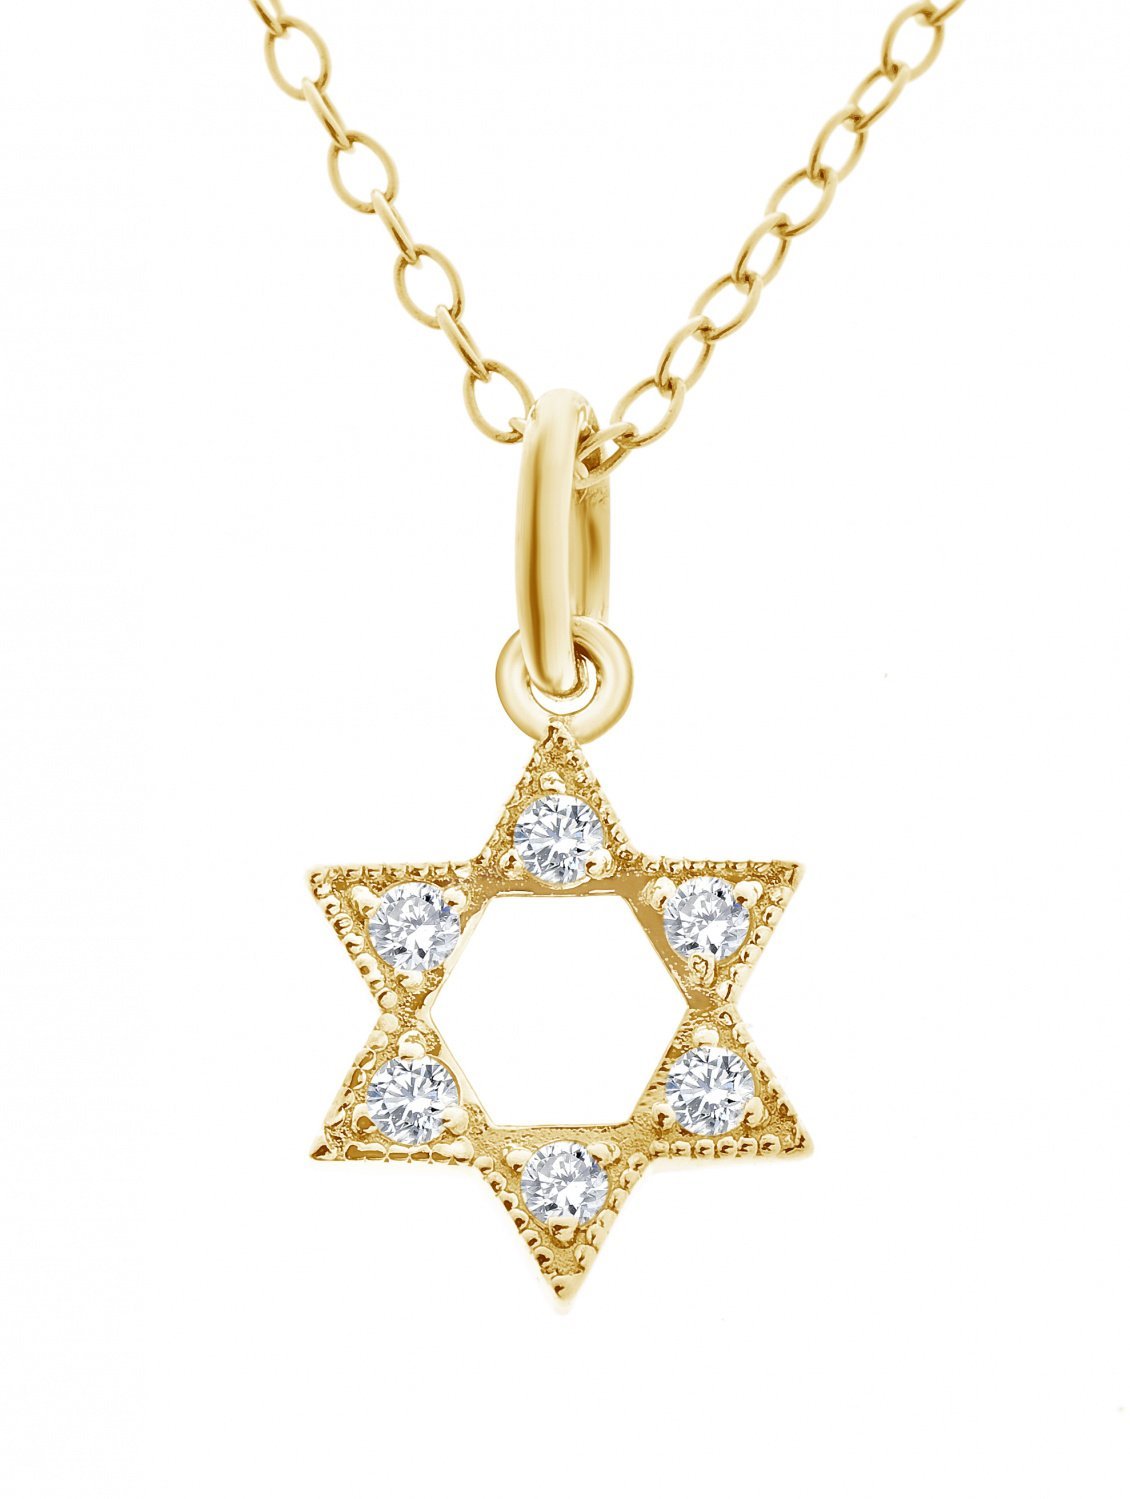 Diamond Star Necklace + Bat Mitzah Gift - Alef Bet Jewelry by Paula